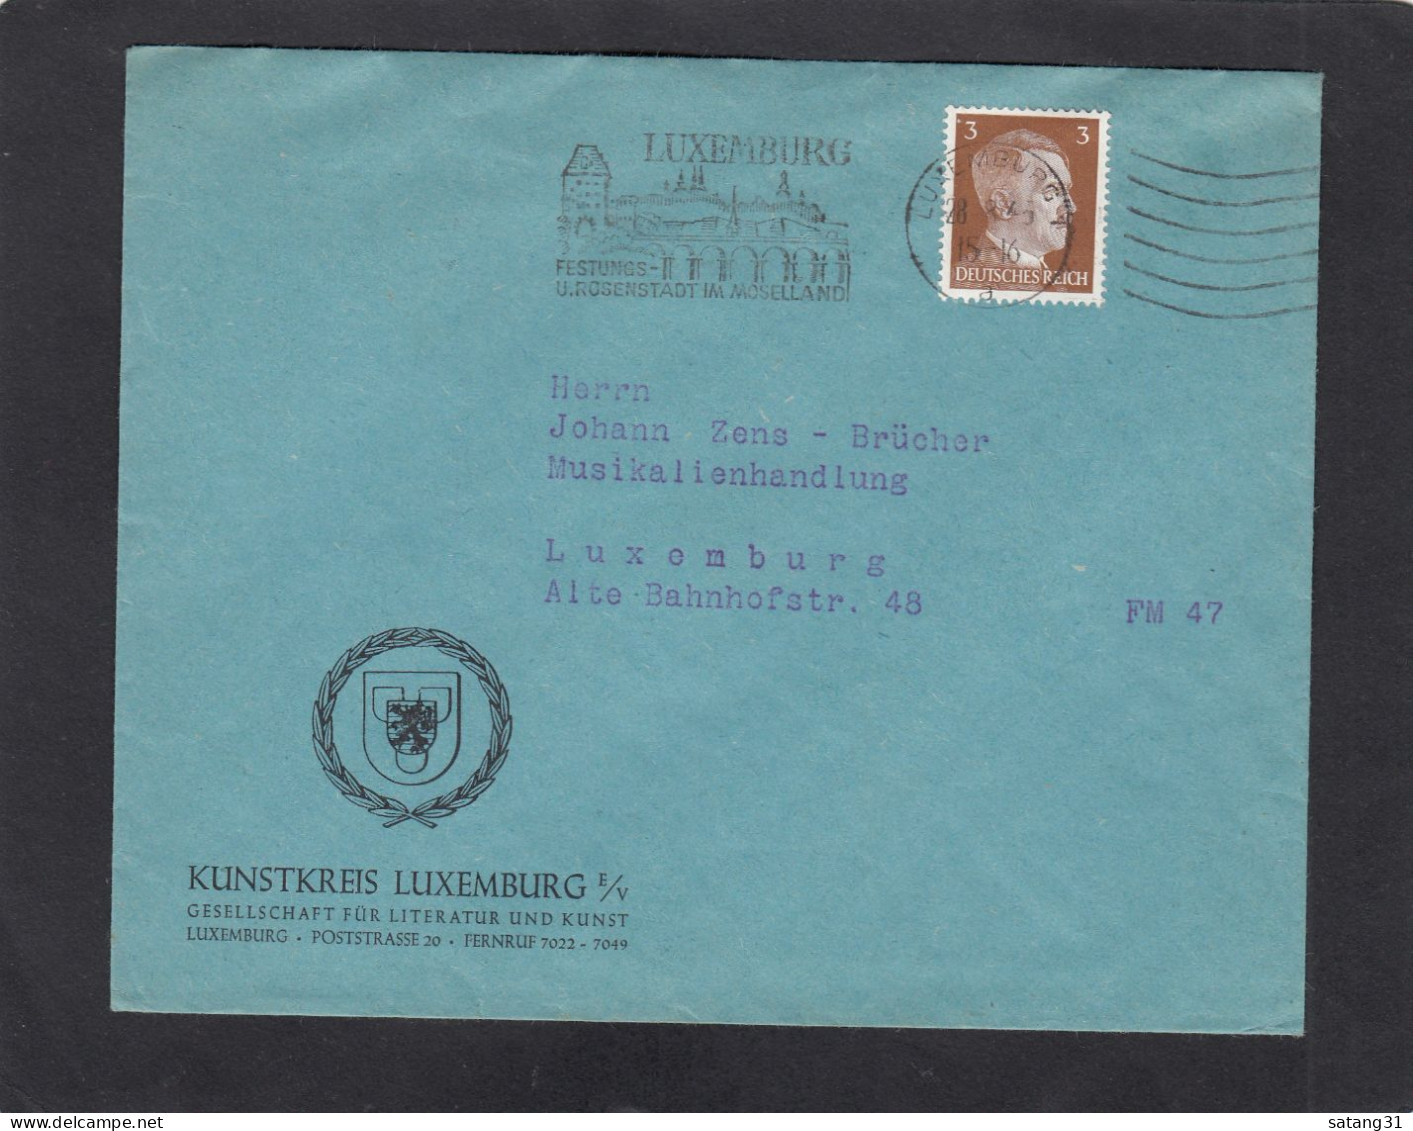 KUNSTKREIS LUXEMBURG,GESELLSCHAFT FÜR LITTERATUR UND KUNST,LUXEMBURG. - 1940-1944 Duitse Bezetting